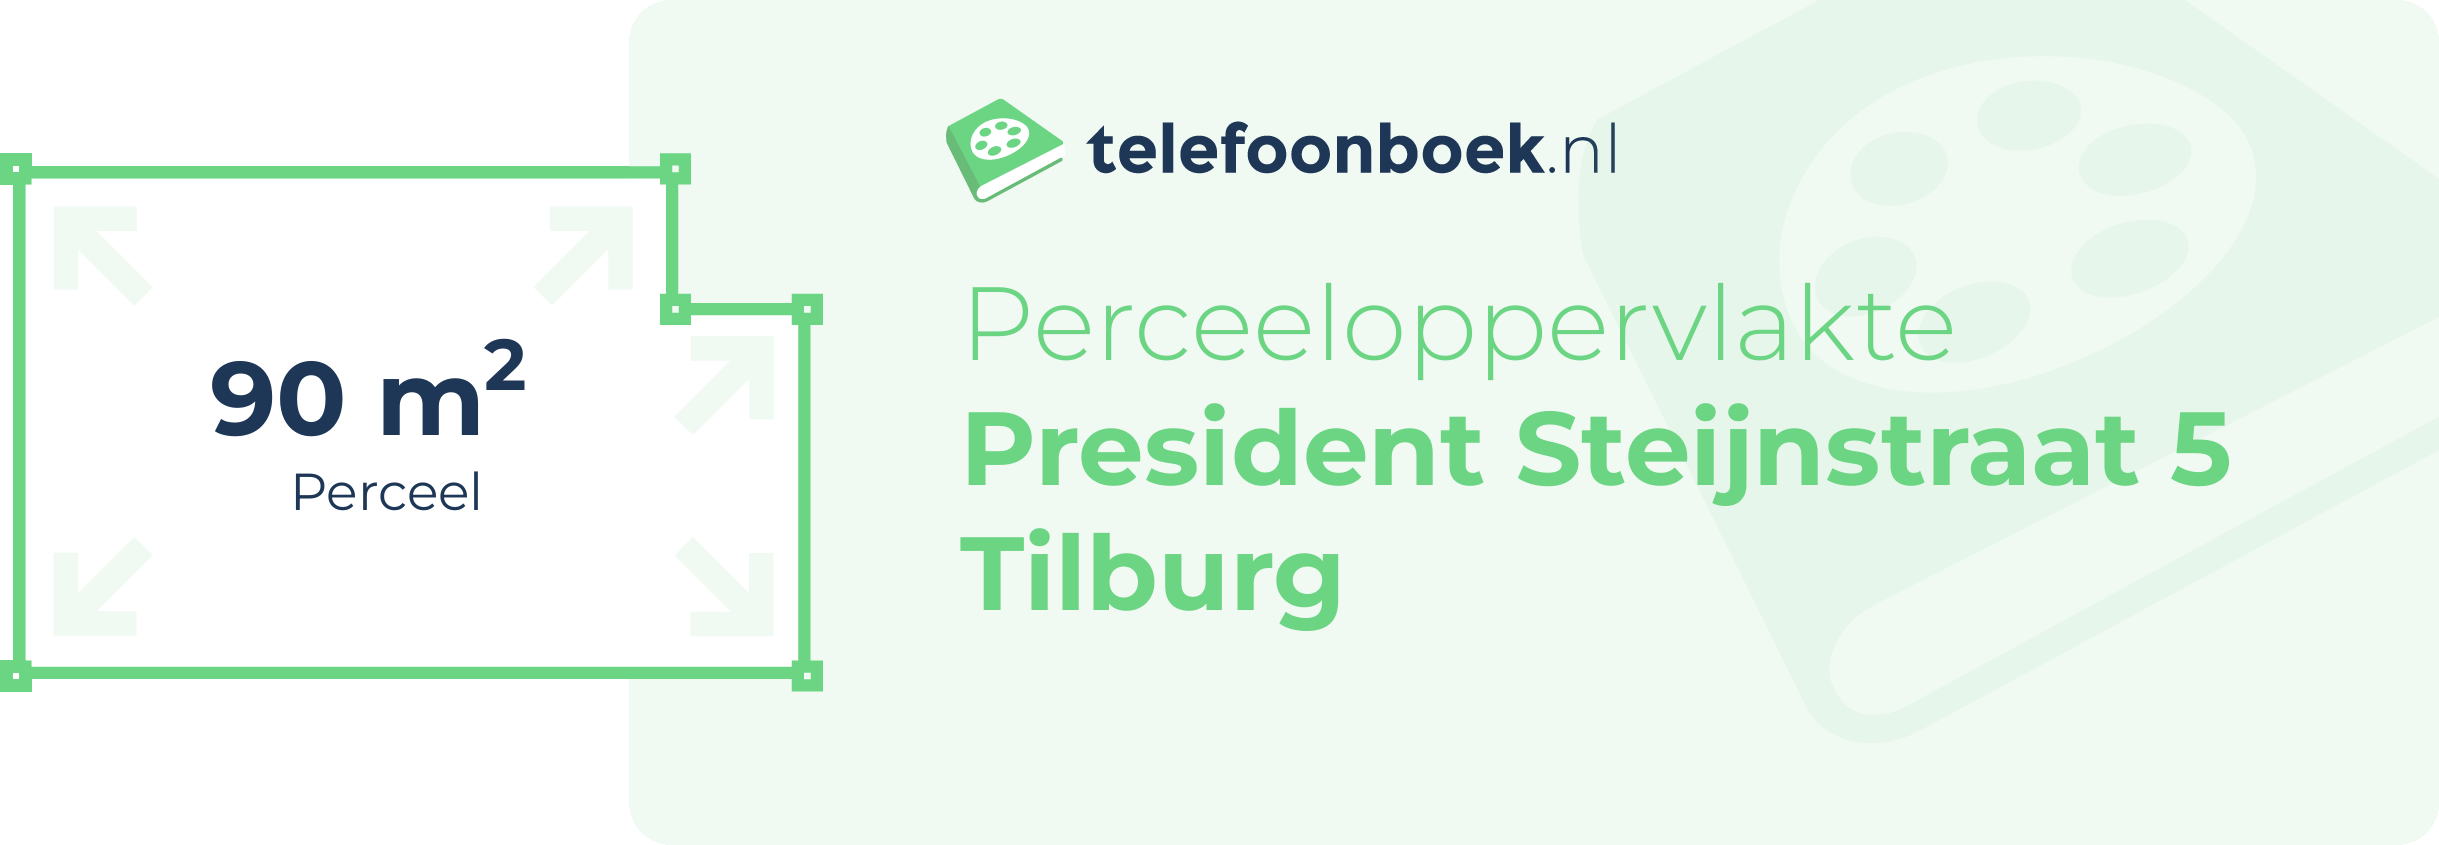 Perceeloppervlakte President Steijnstraat 5 Tilburg